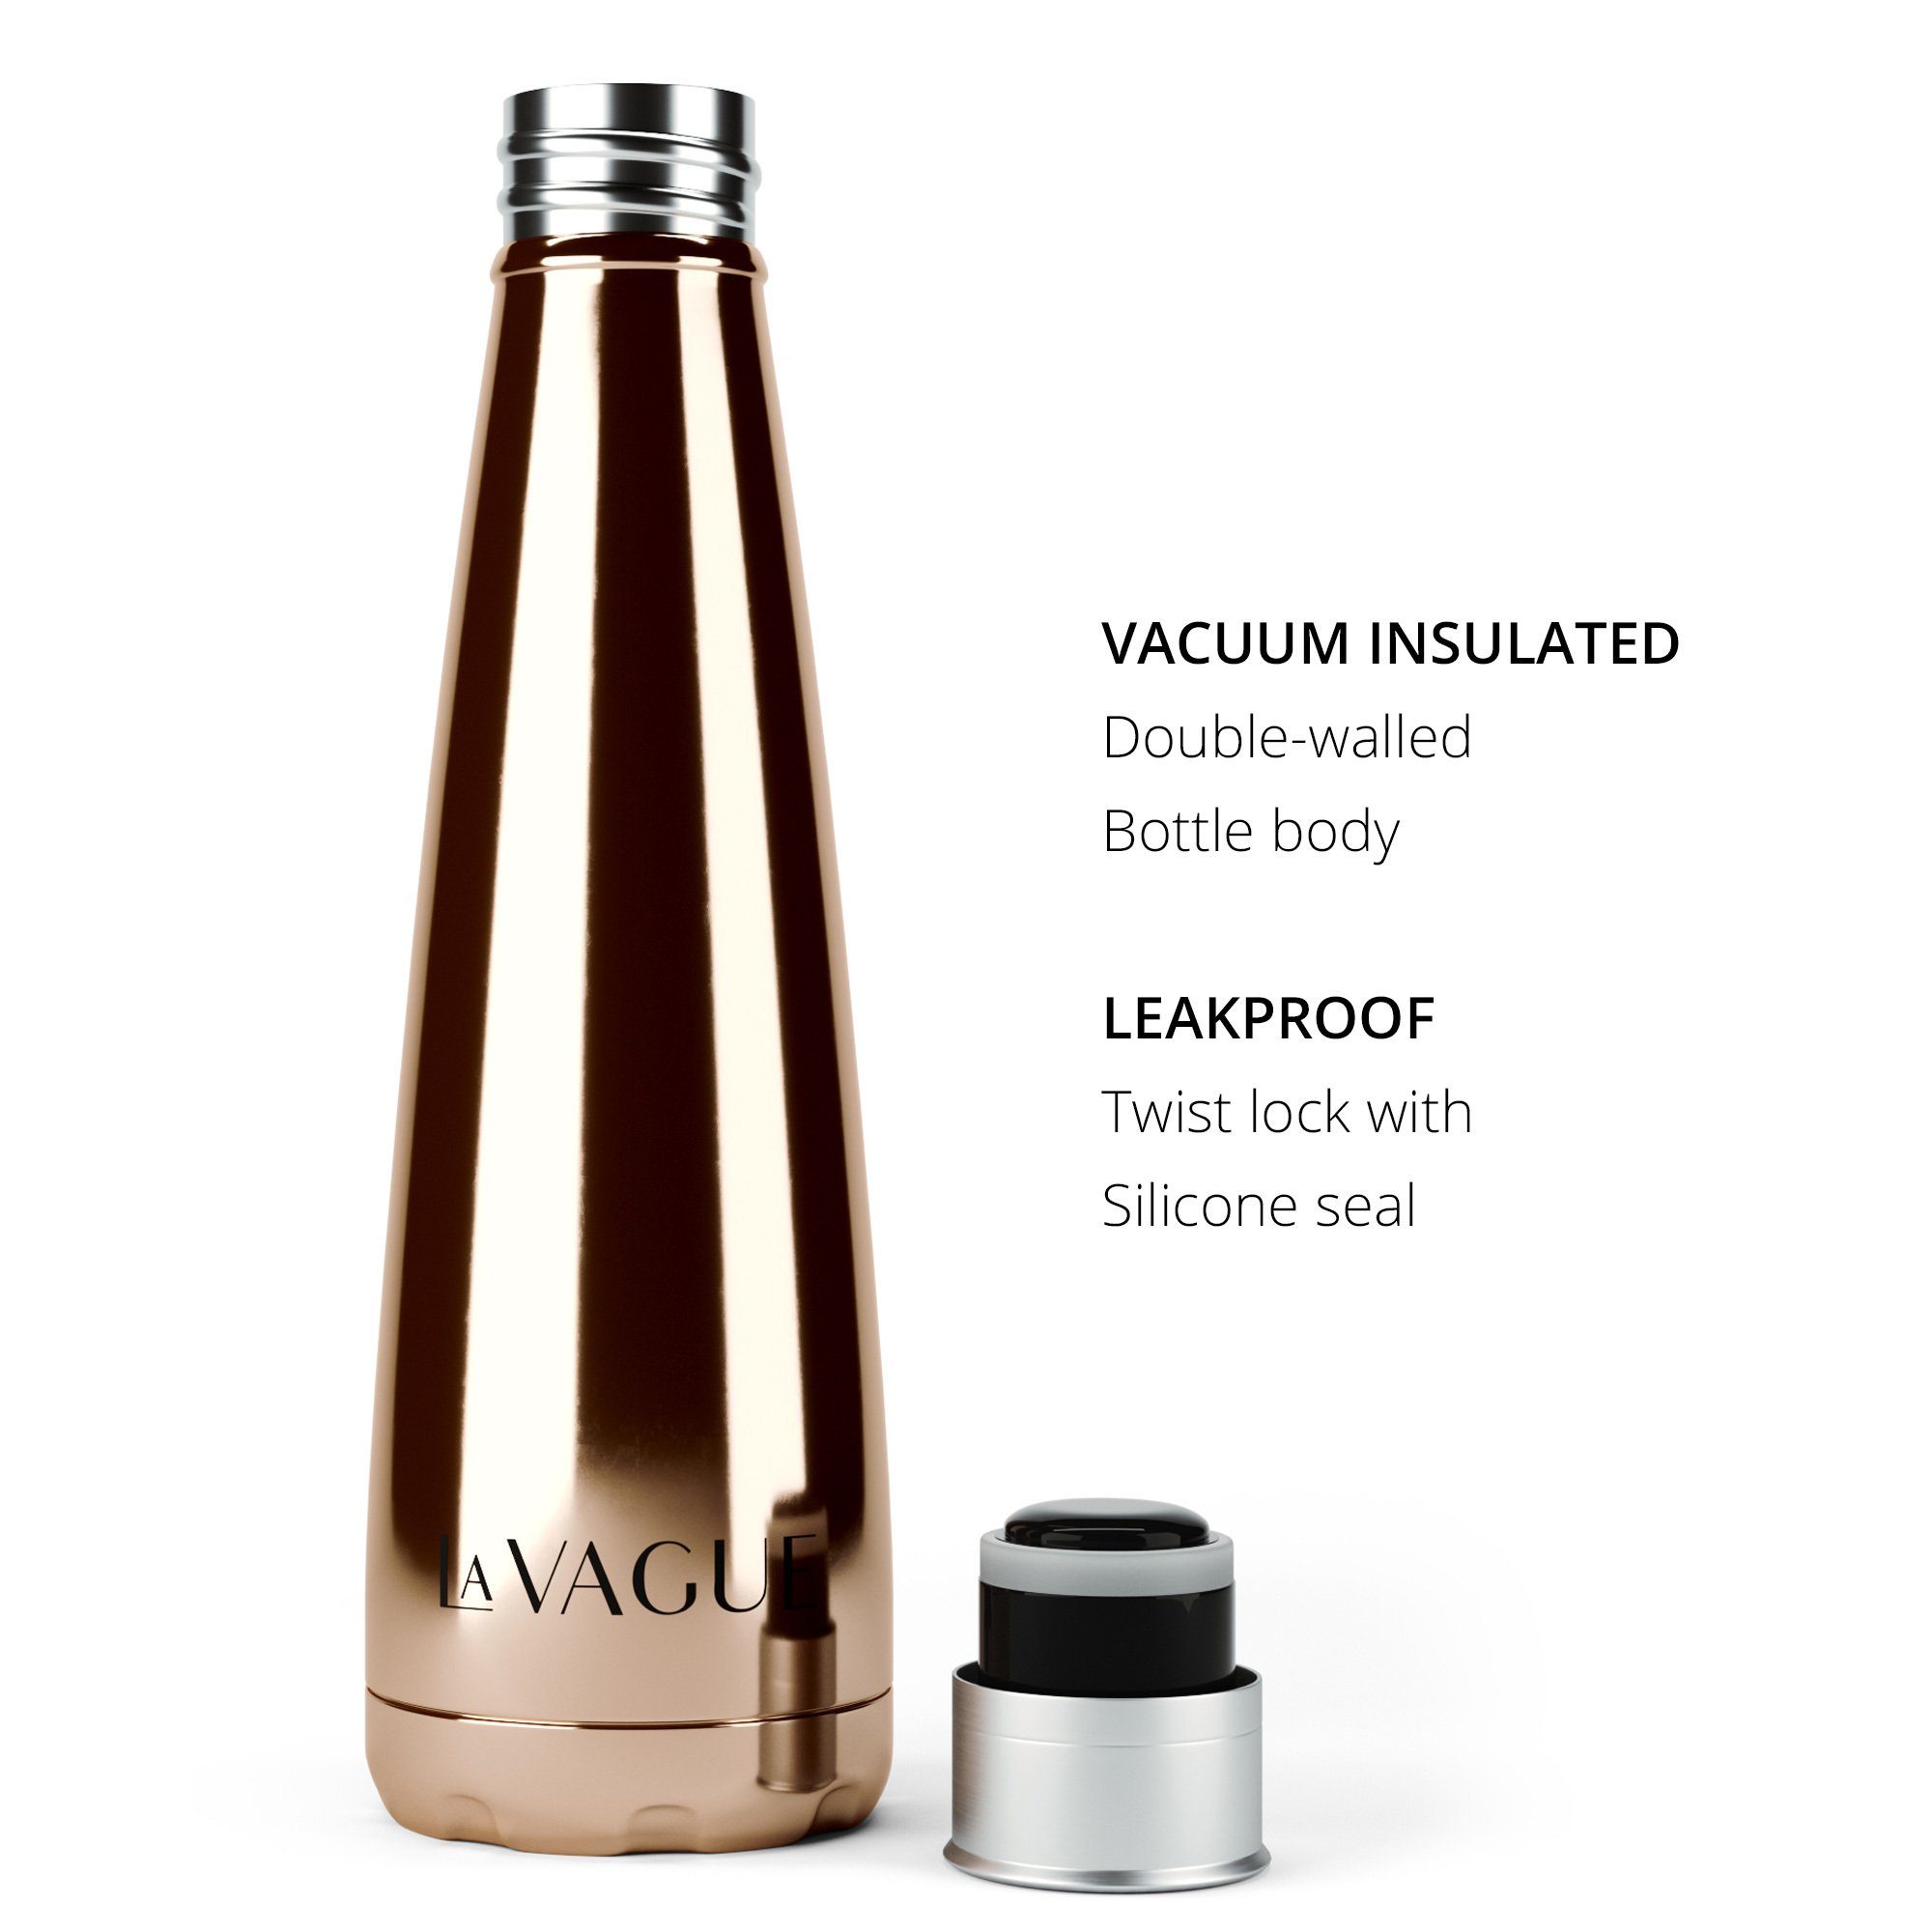 VAGUE Edelstahl GRAVITY edelstahl-isolierflasche, aus LA Wasserflasche Doppelwandige Isolierflasche kupferfarben